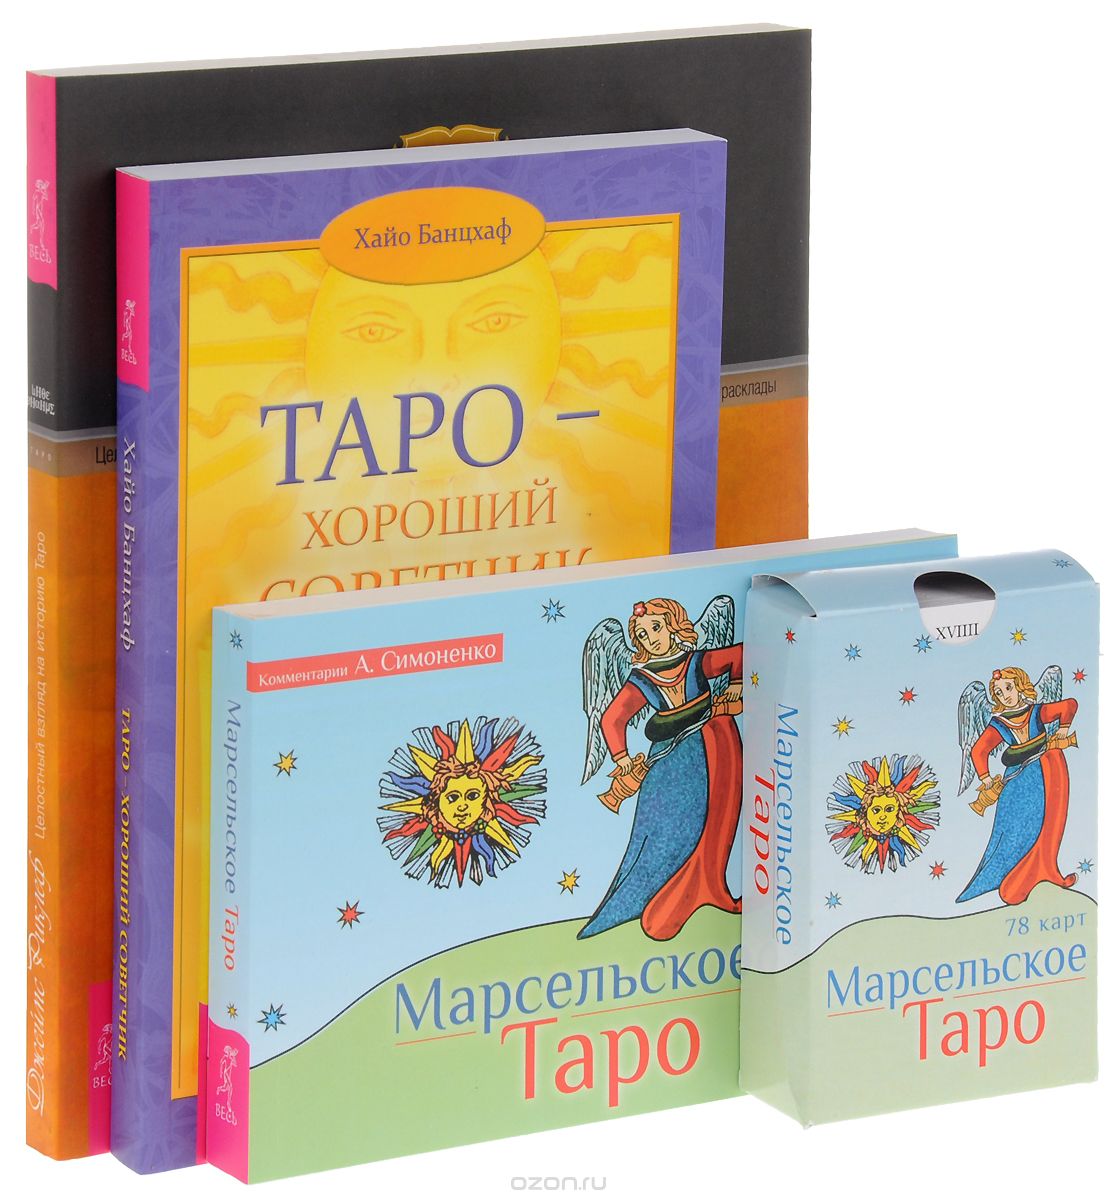 Скачать книгу "Марсельское Таро. Таро – хороший советчик. Целостный взгляд на историю Таро (комплект из 3 книг + 78 карт), А. Симоненко, Хайо Банцхаф, Джеймс Риклеф"